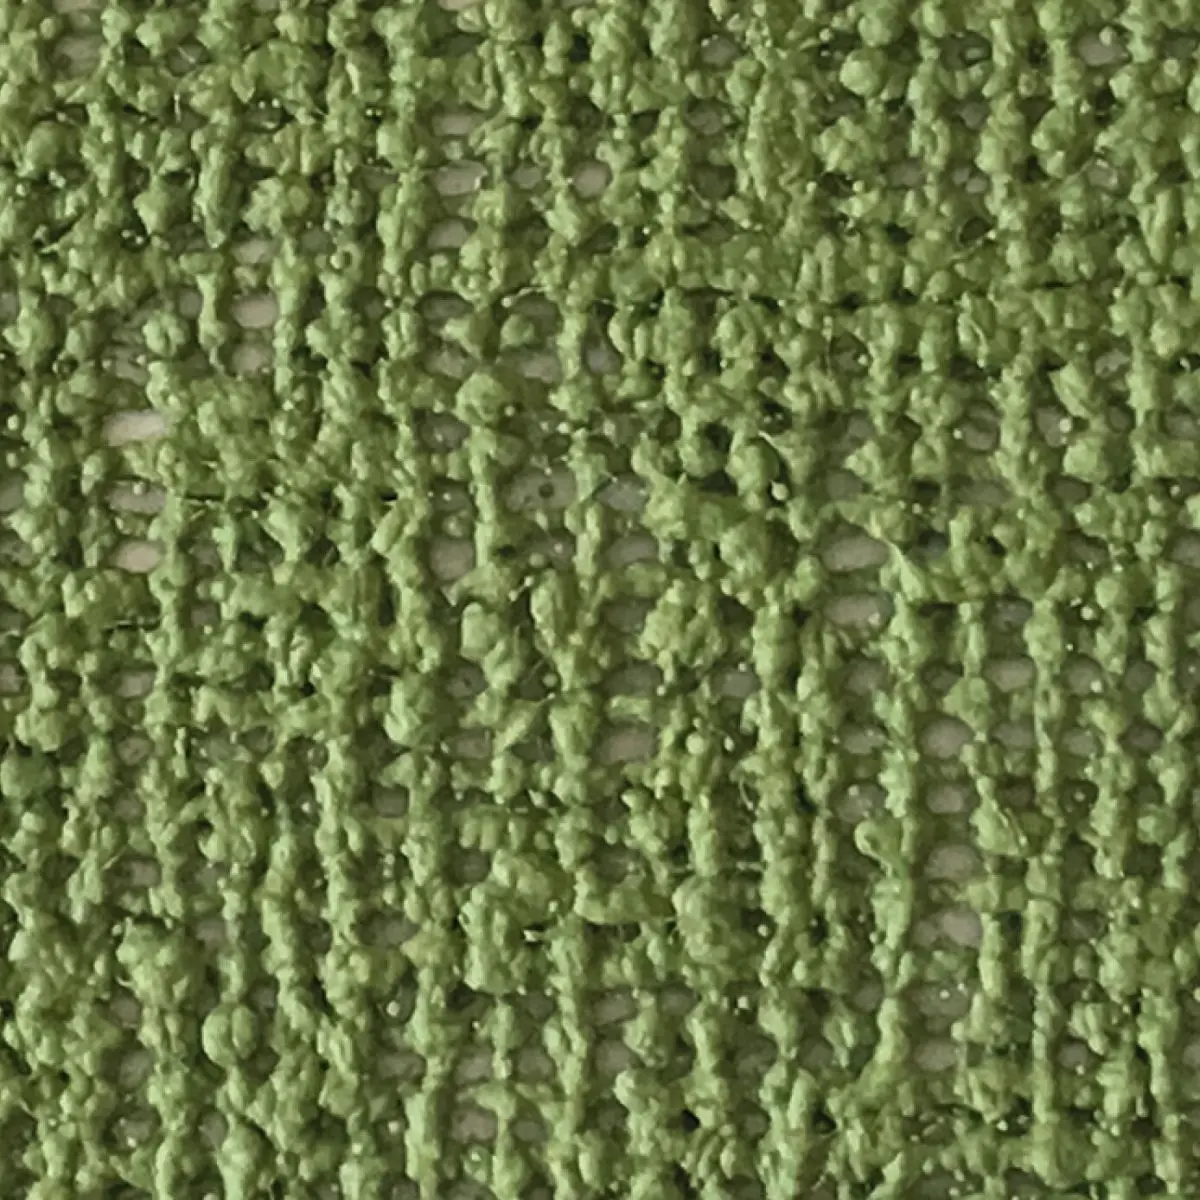 Markízny koberec Aero-Tex - 250 x 500 cm, zelený